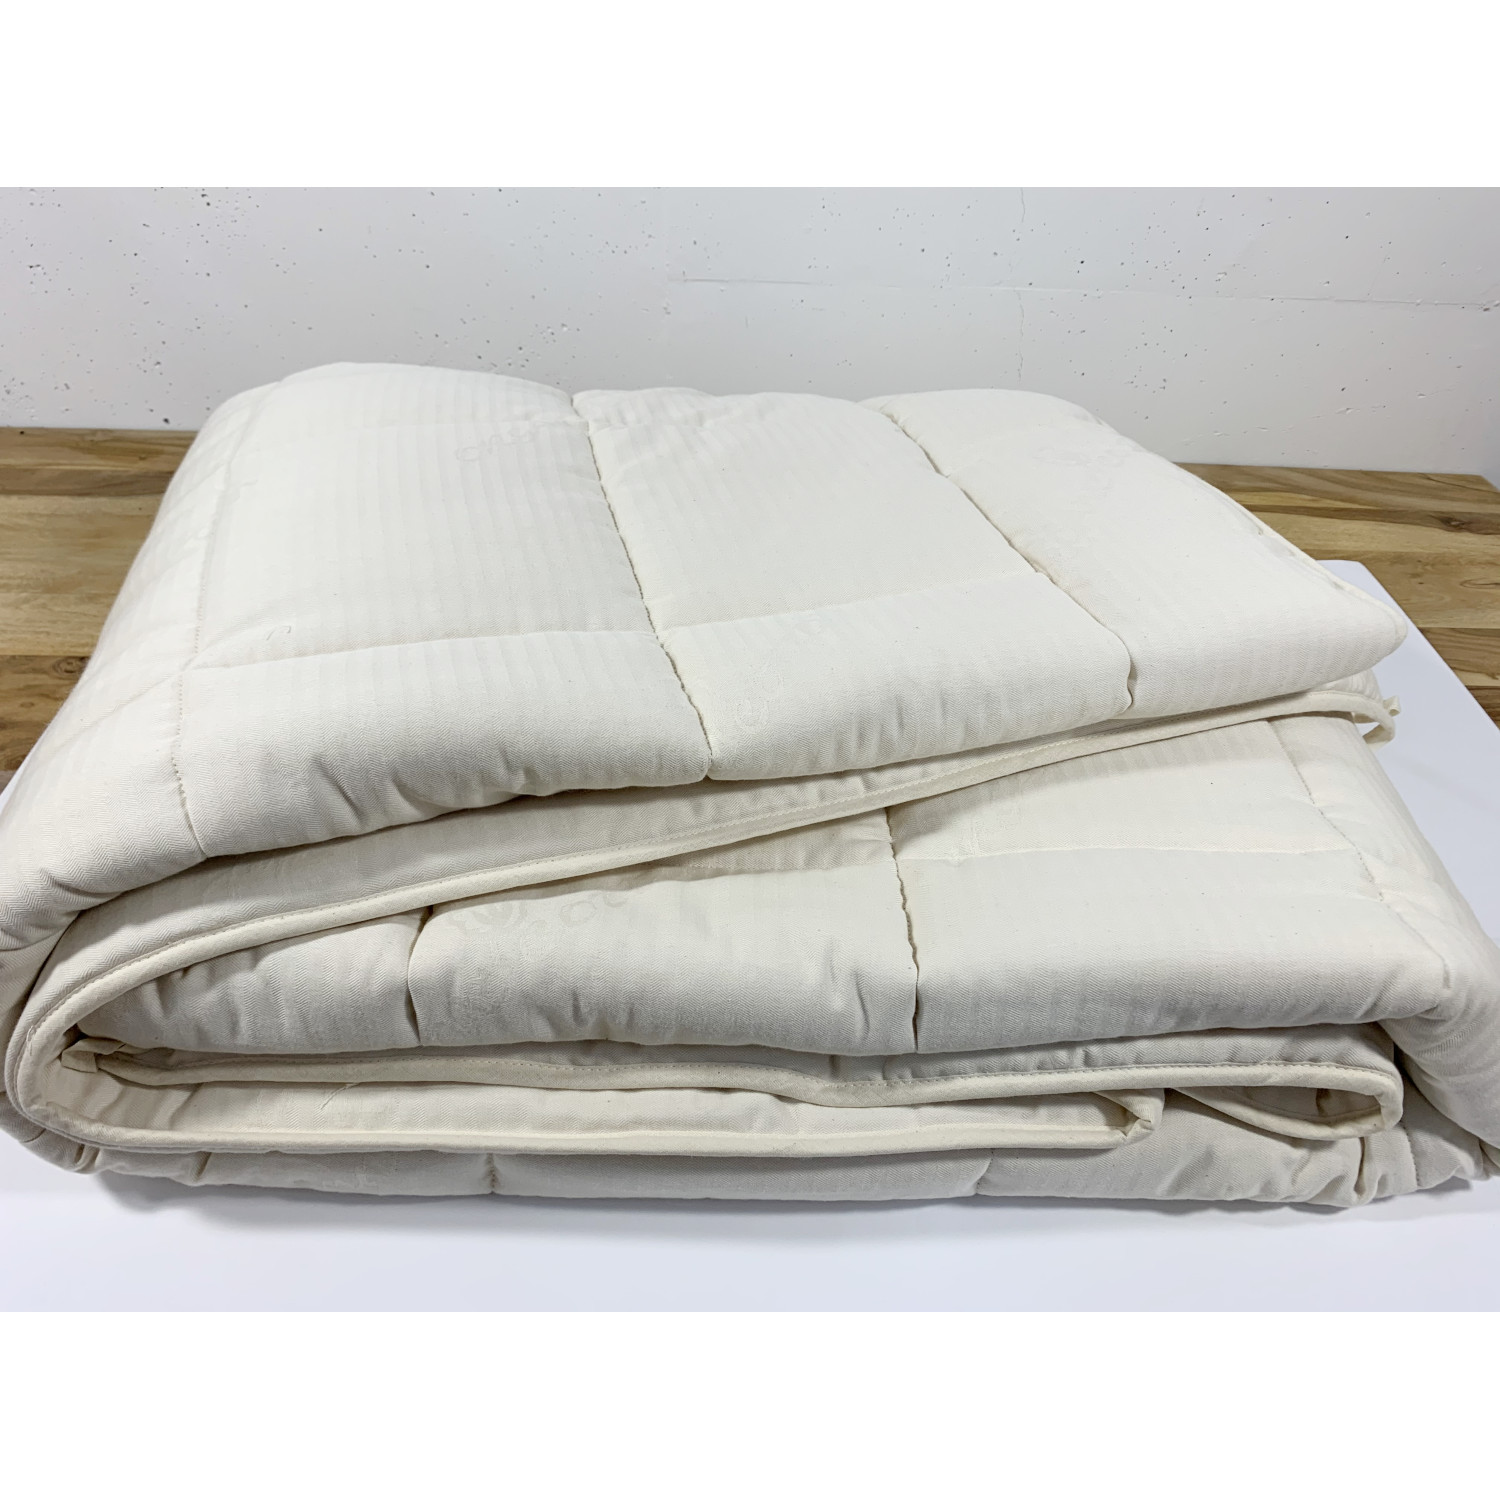 Trapunta letto singolo in lana naturale ed esterno in cotone grezzo